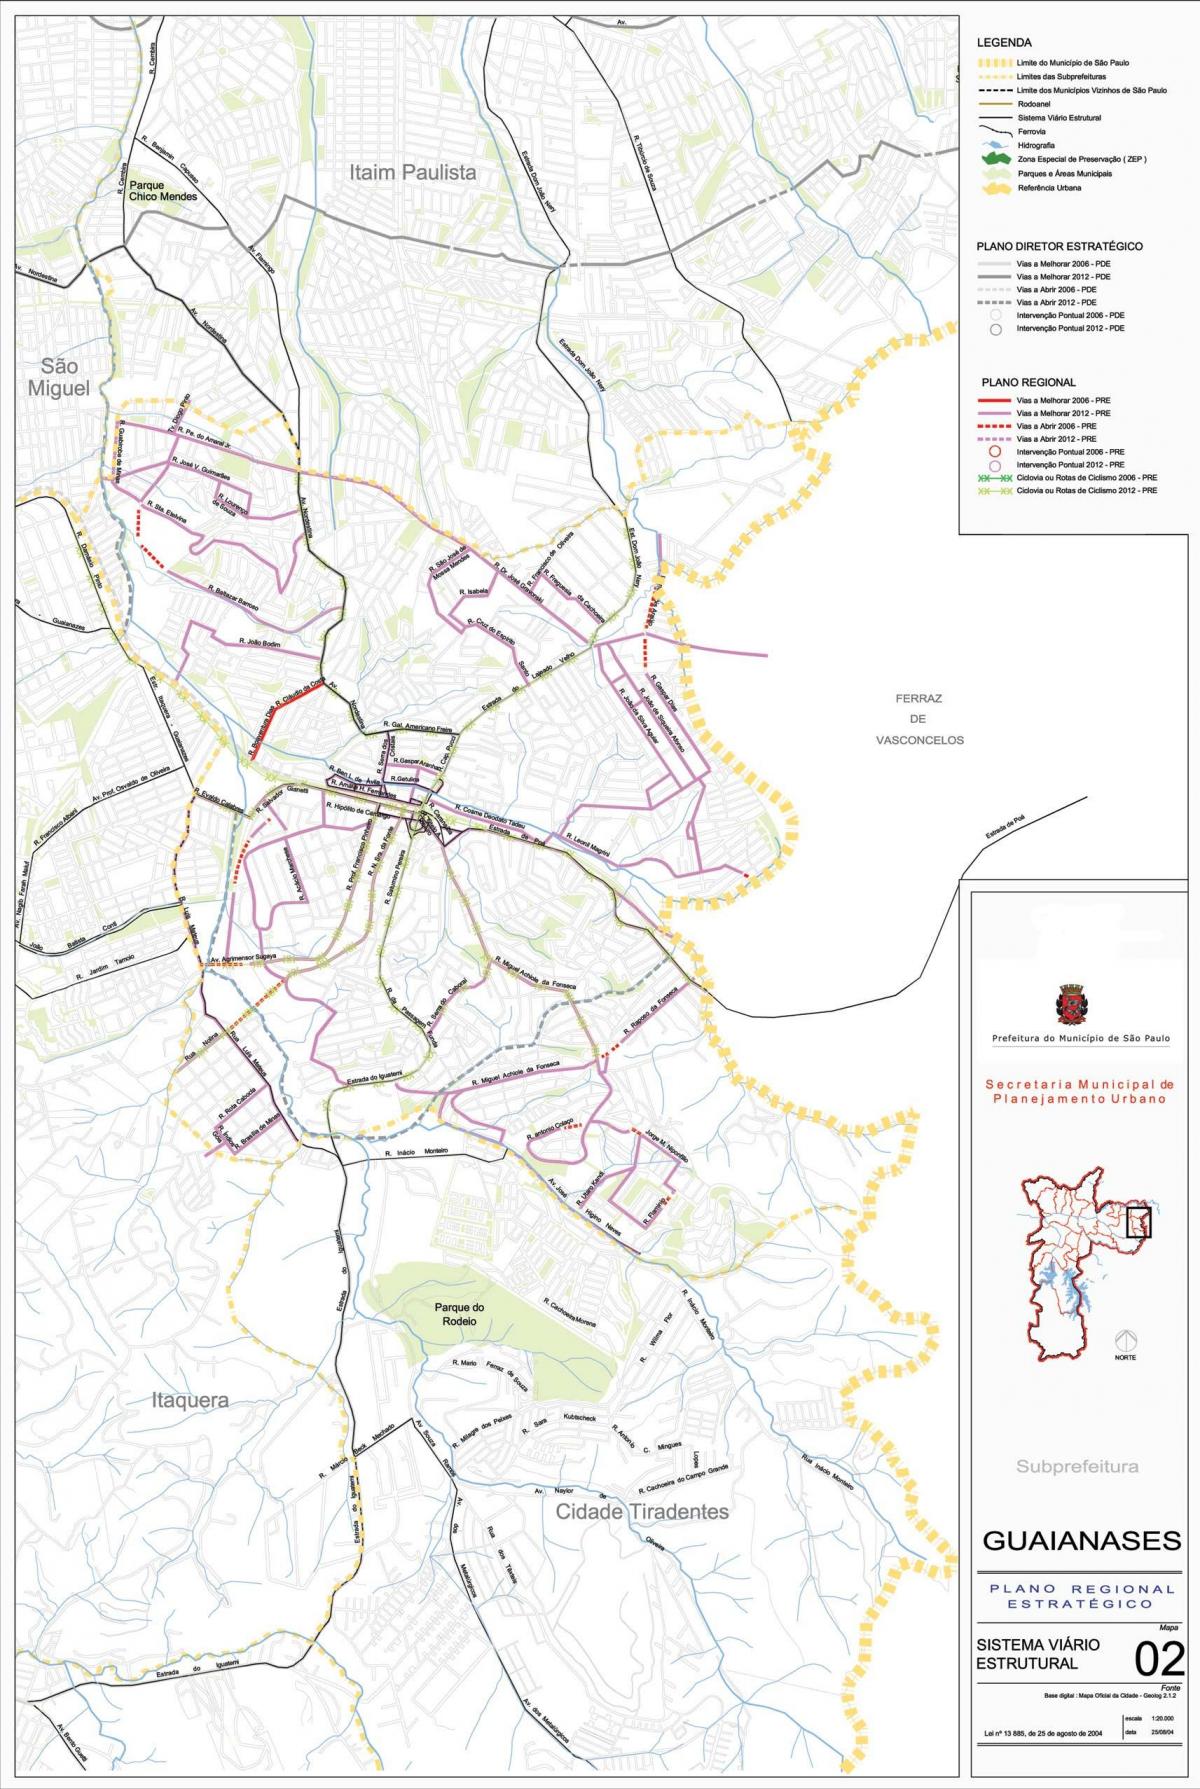 Kaart van Guaianases São Paulo - Paaie